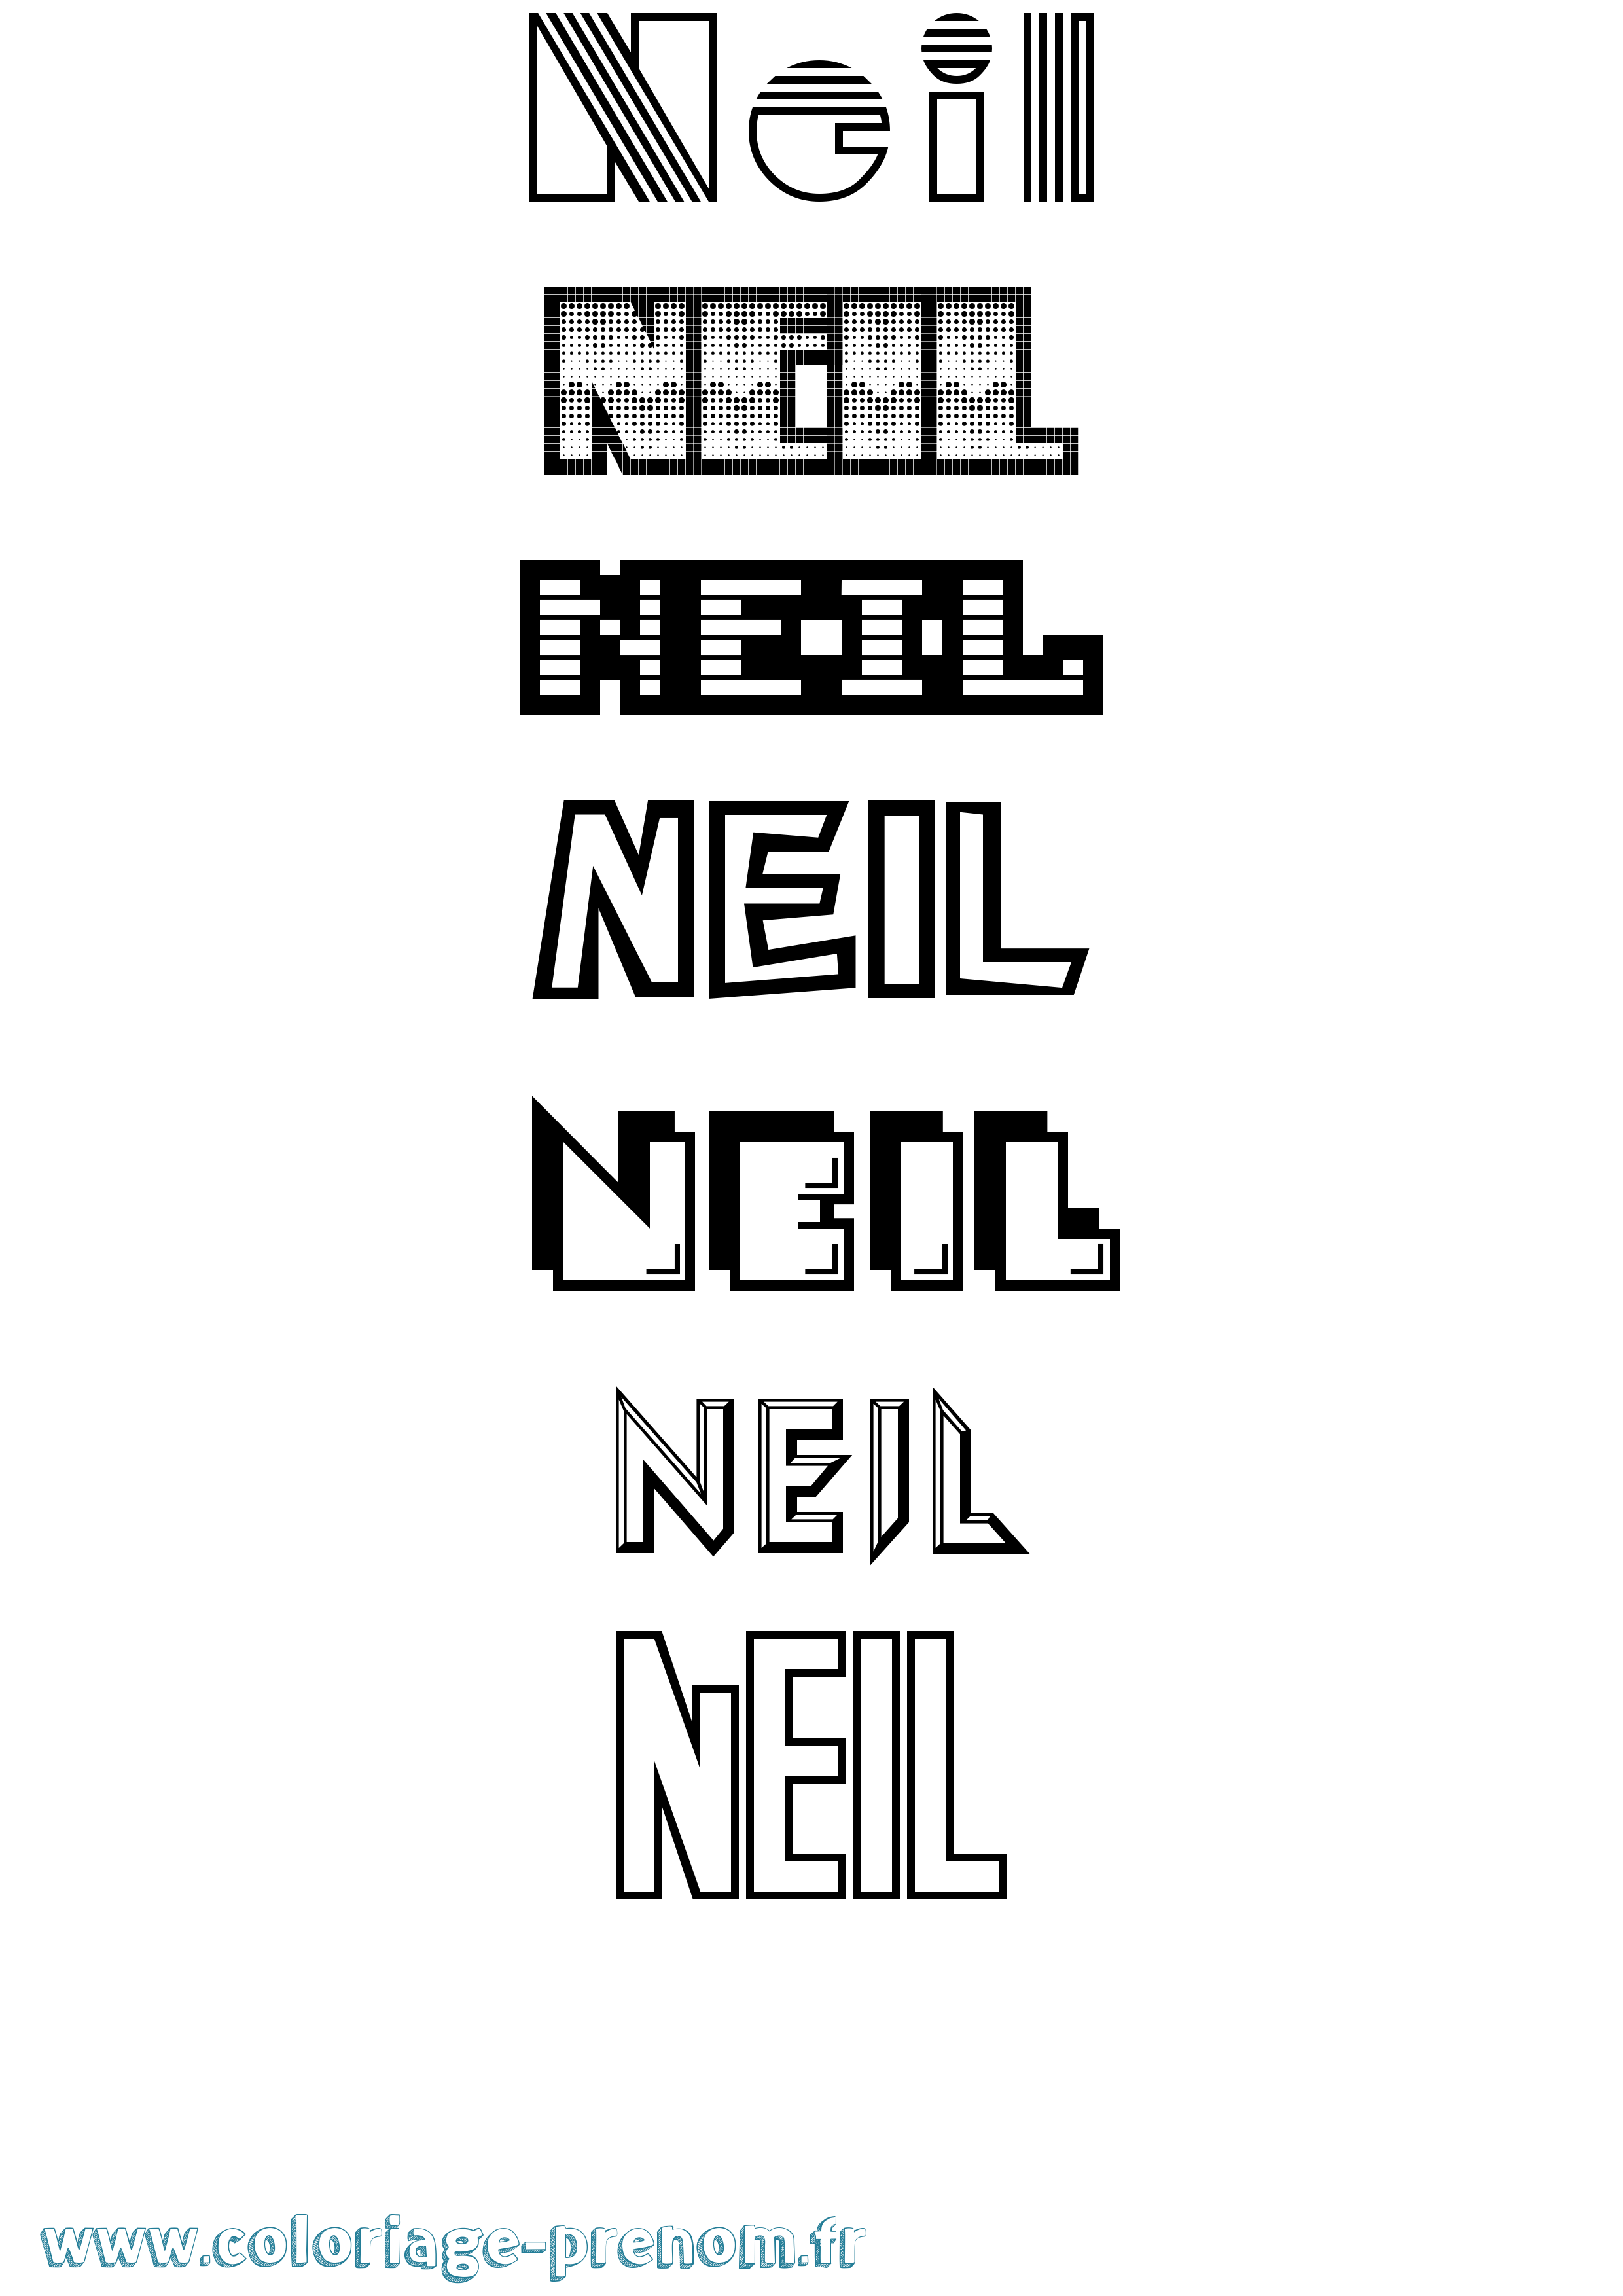 Coloriage prénom Neil Jeux Vidéos